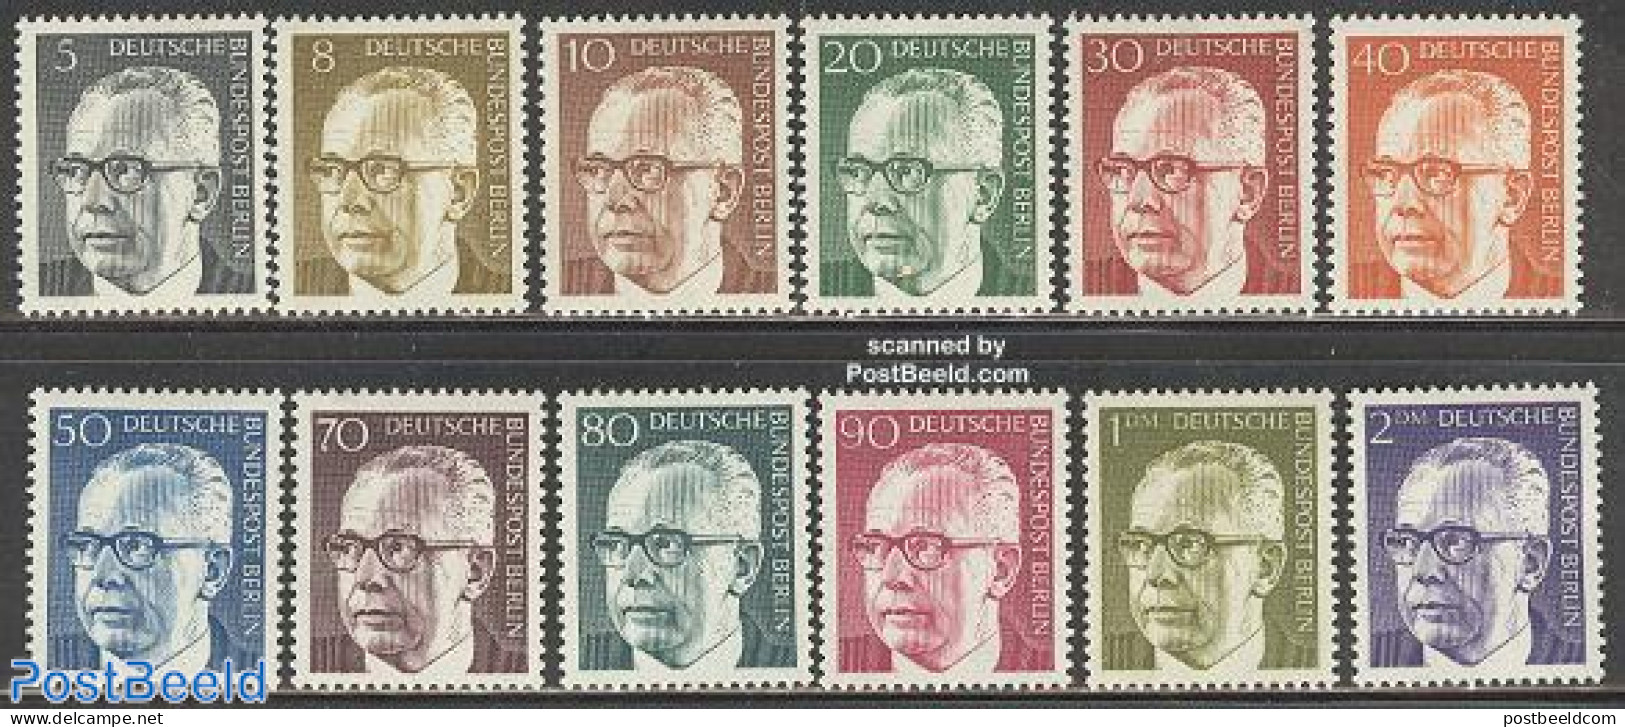 Germany, Berlin 1970 Definitives, Heinemann 12v, Mint NH - Unused Stamps